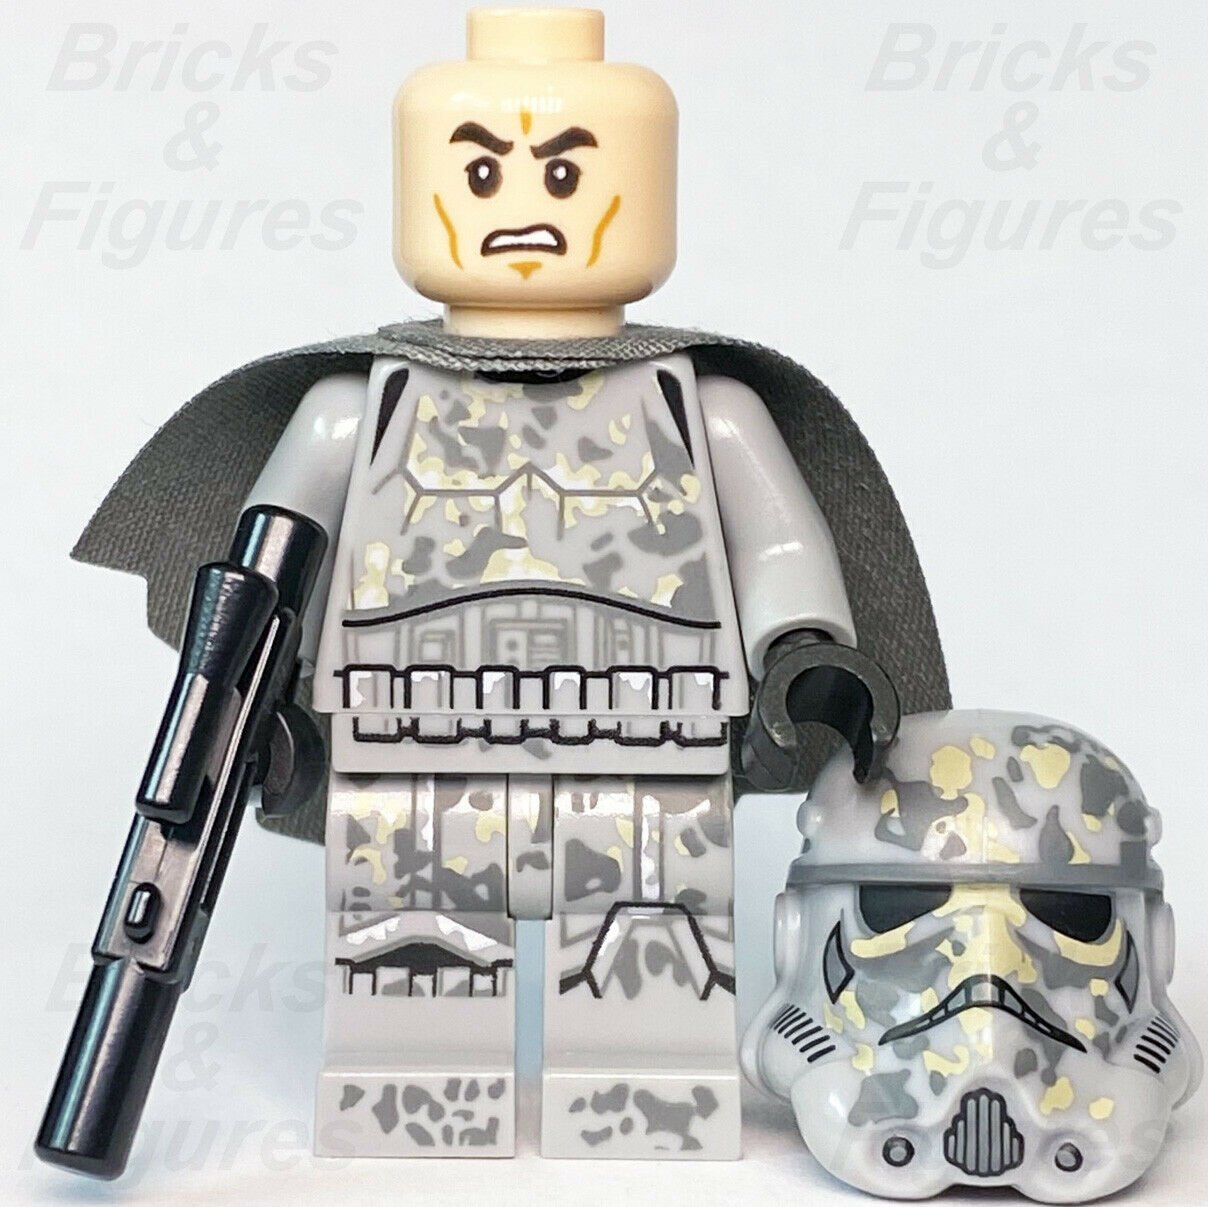 New Star Wars LEGO Mimban Stormtrooper Minifigure Solo Trooper Sw0927 75211 - Bricks & Figures